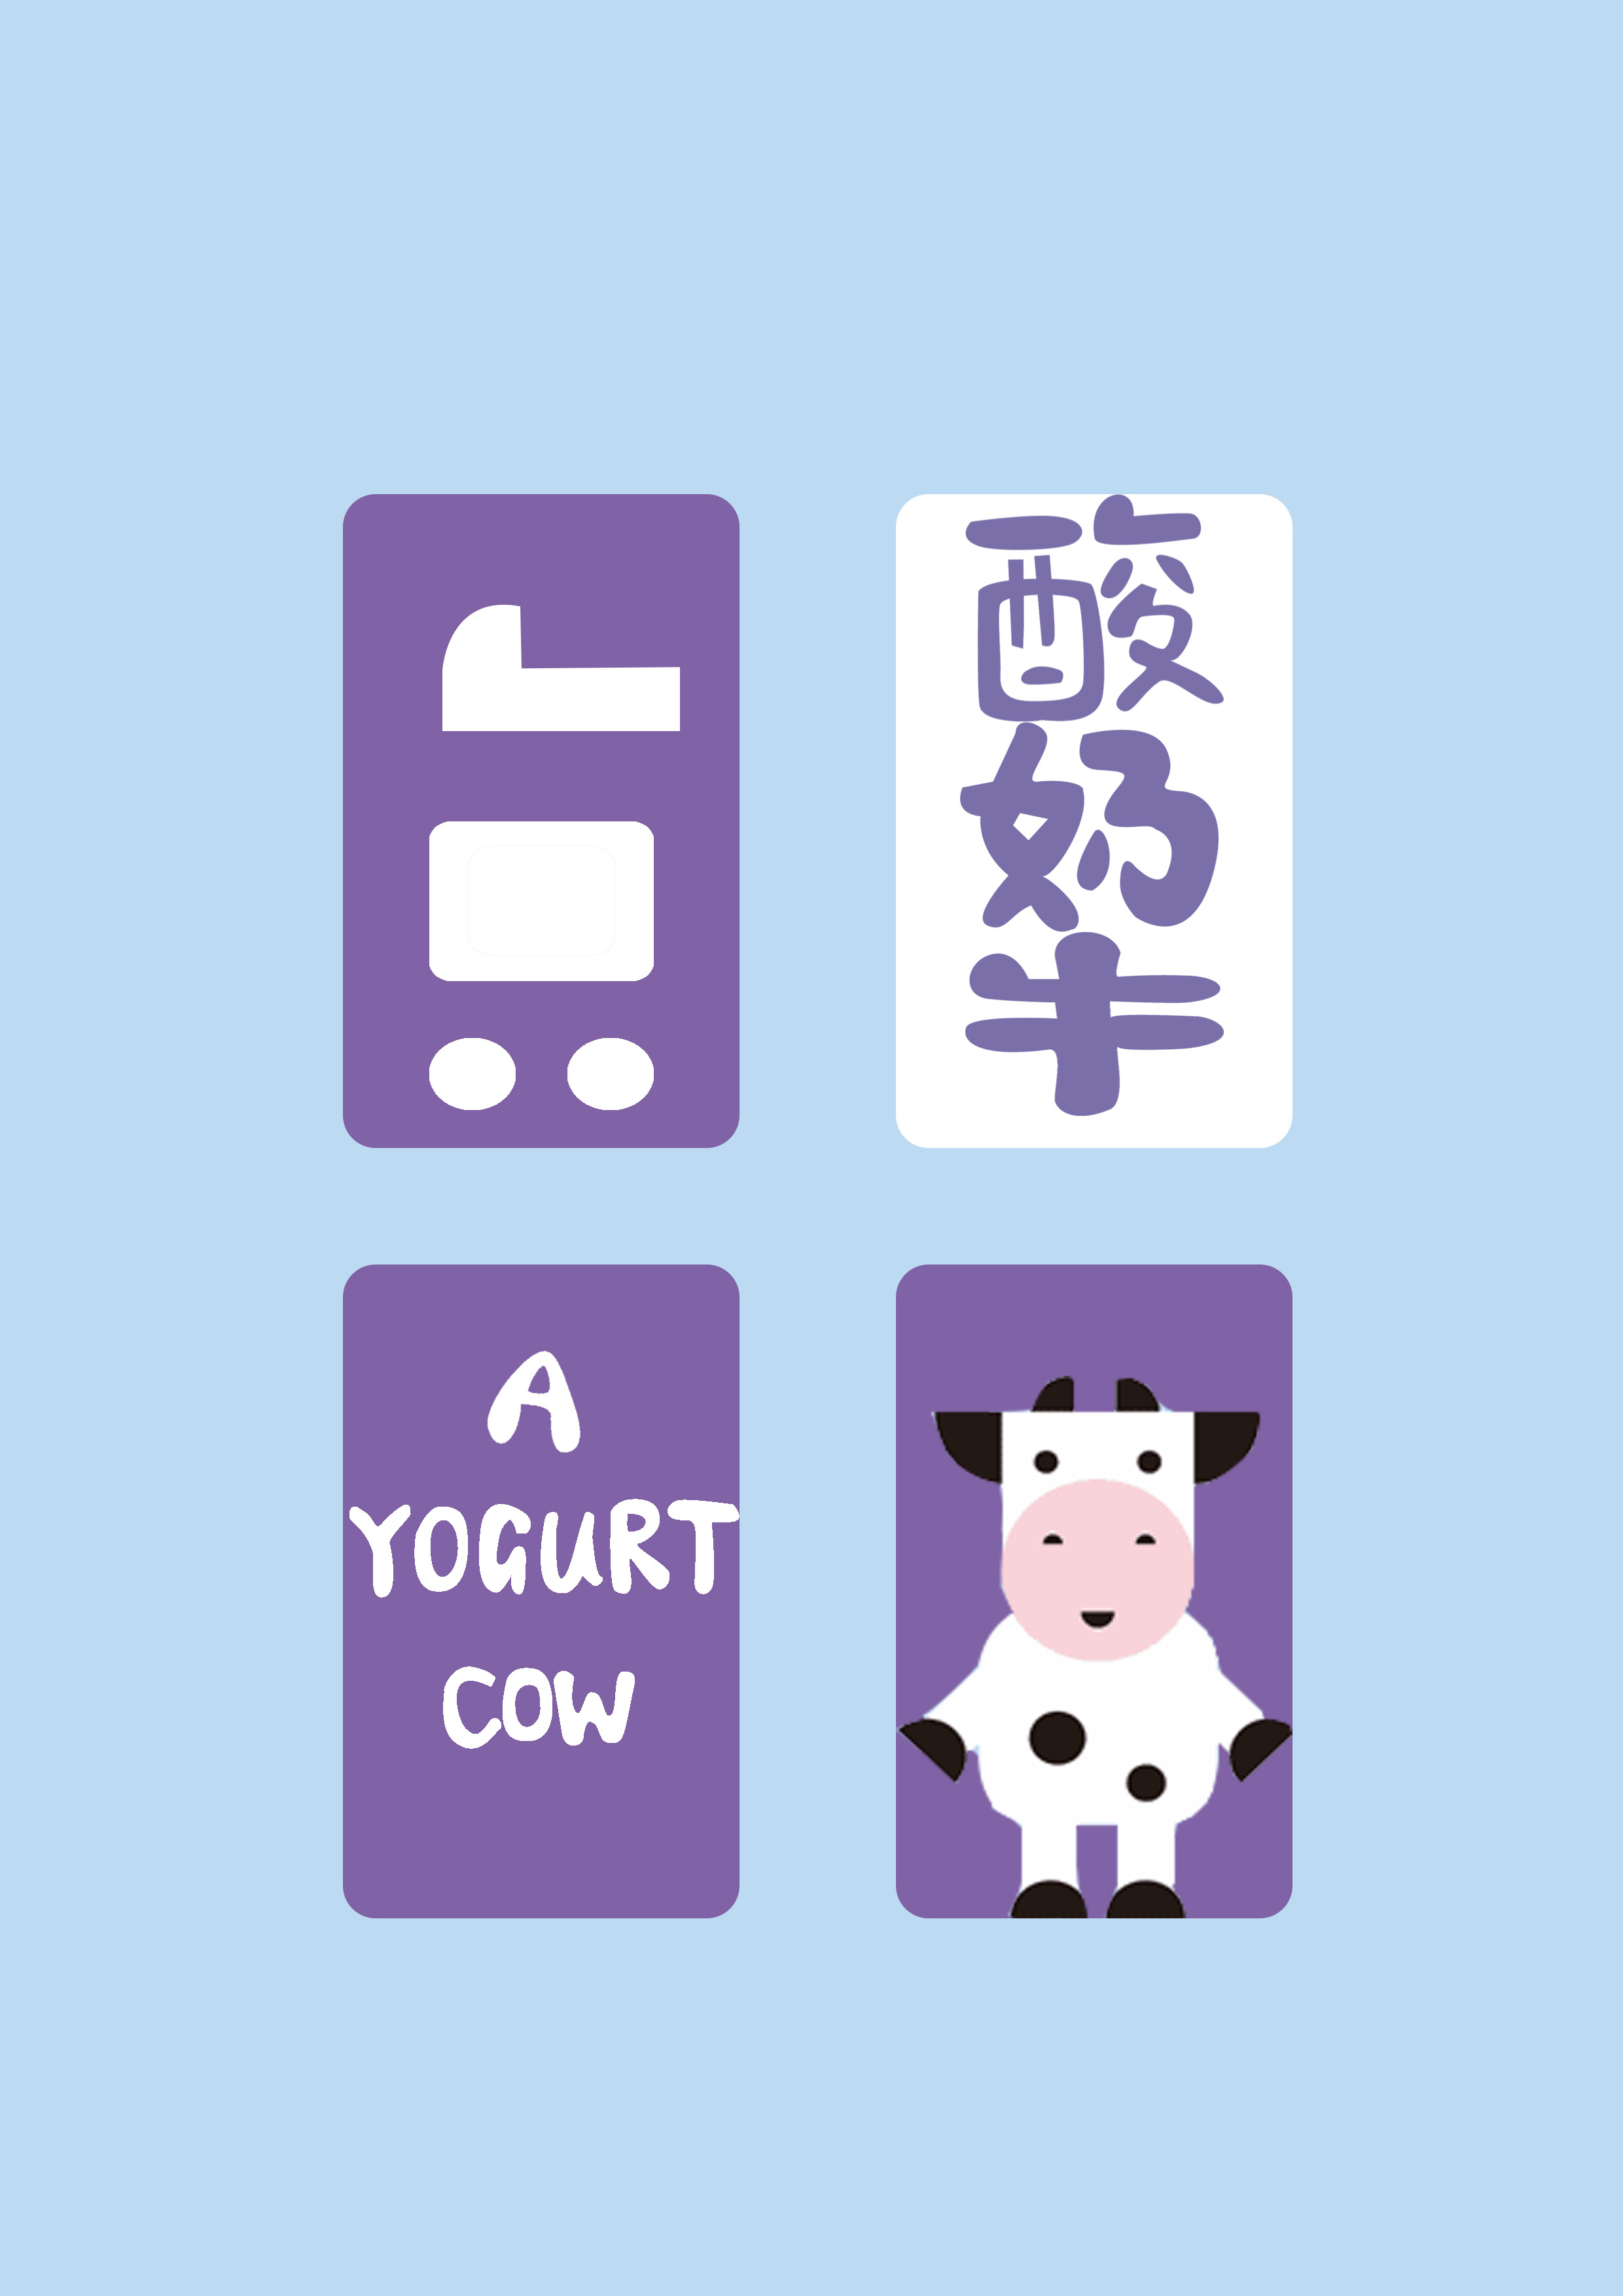 一只酸奶牛唯一官网：加盟代理一只酸奶牛官方事先要筹备什么